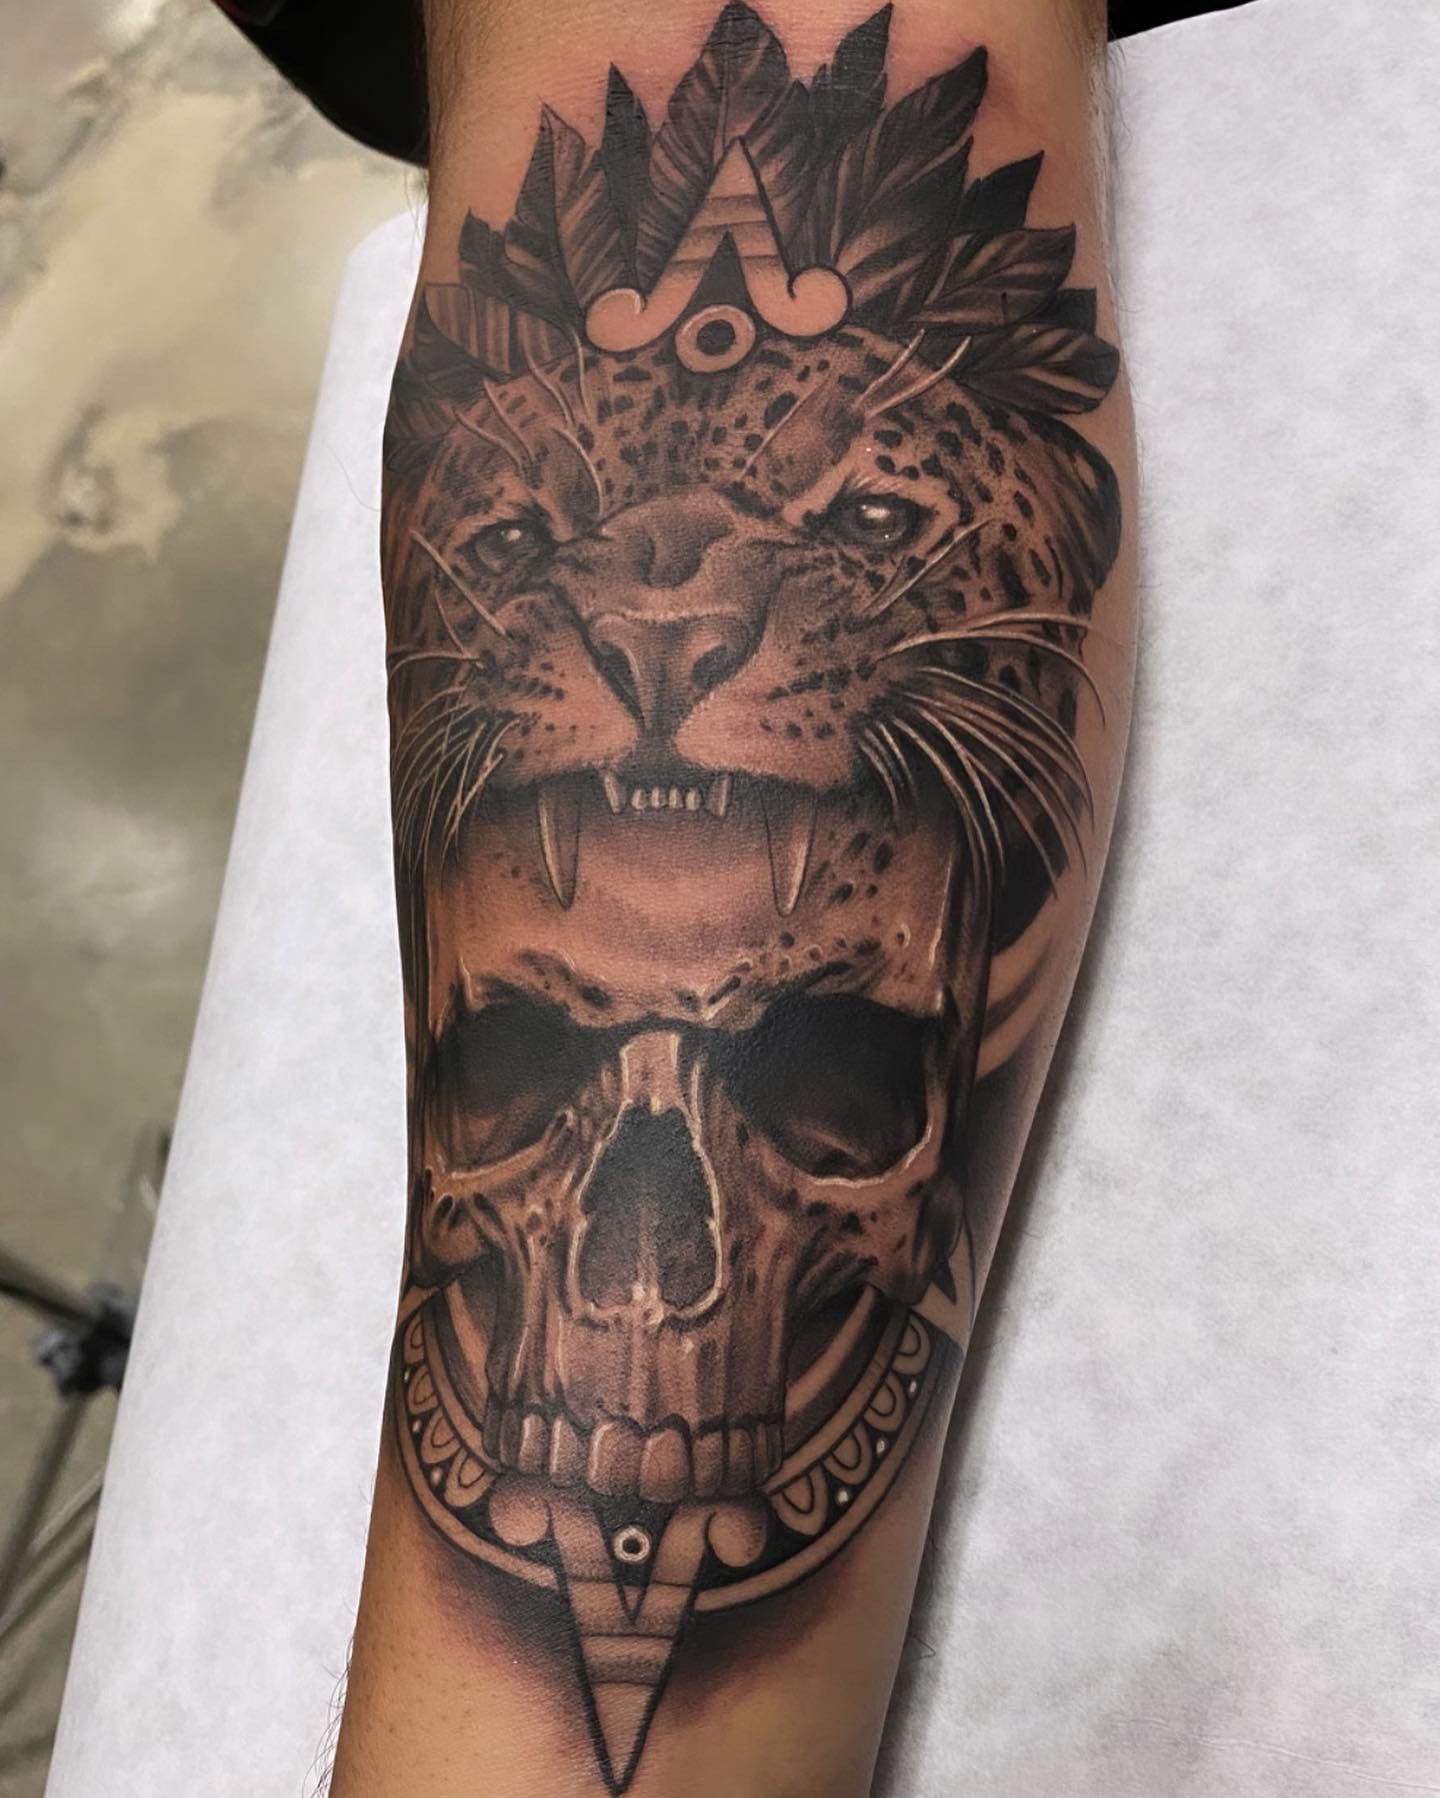 KADX  INK MATRIX BALI  on Instagram Apcalipto jaguar paw full back   tattoo tatt tattoos inkbro ink inkedbooking inkgeekstattoos  tattooideas tattooer tattooideas